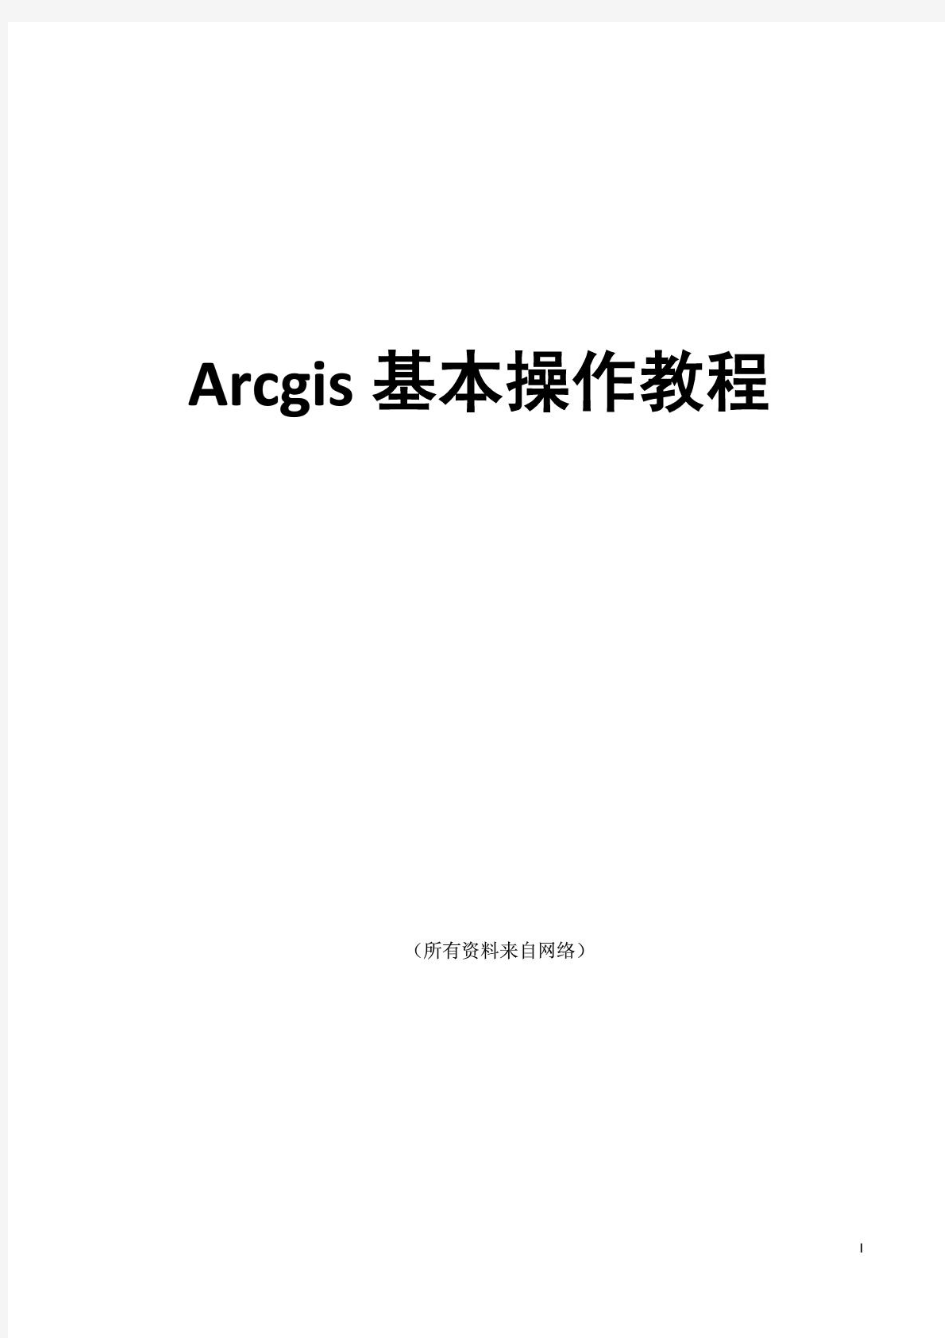 ArcGIS基本操作教程